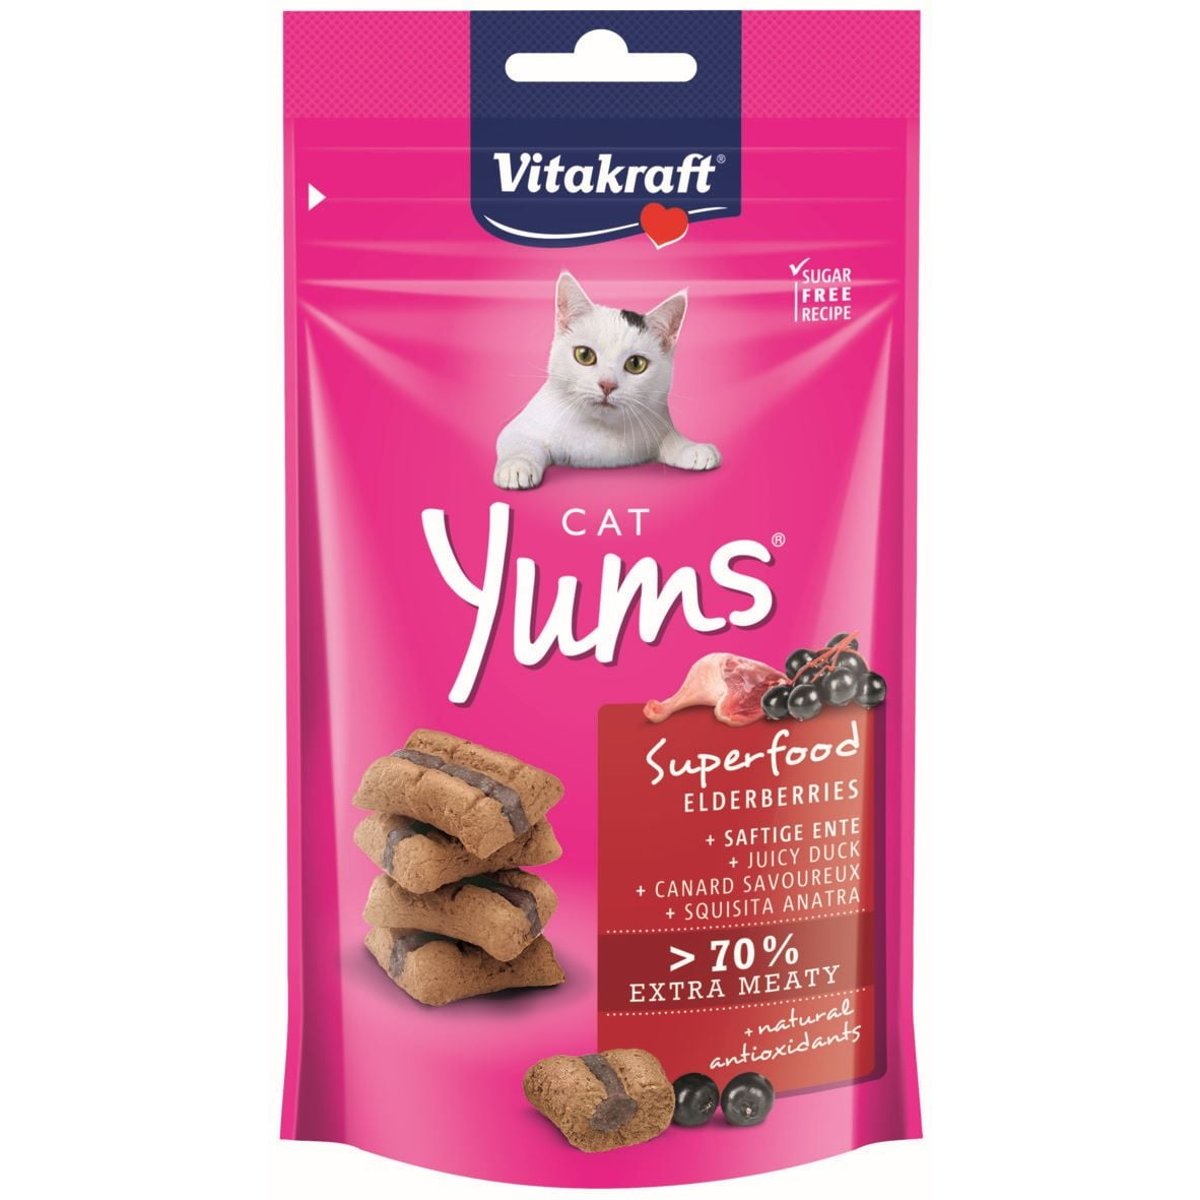 Vitakraft Cat Yums Superfood Polštářky s bezinkami pamlsek pro kočky